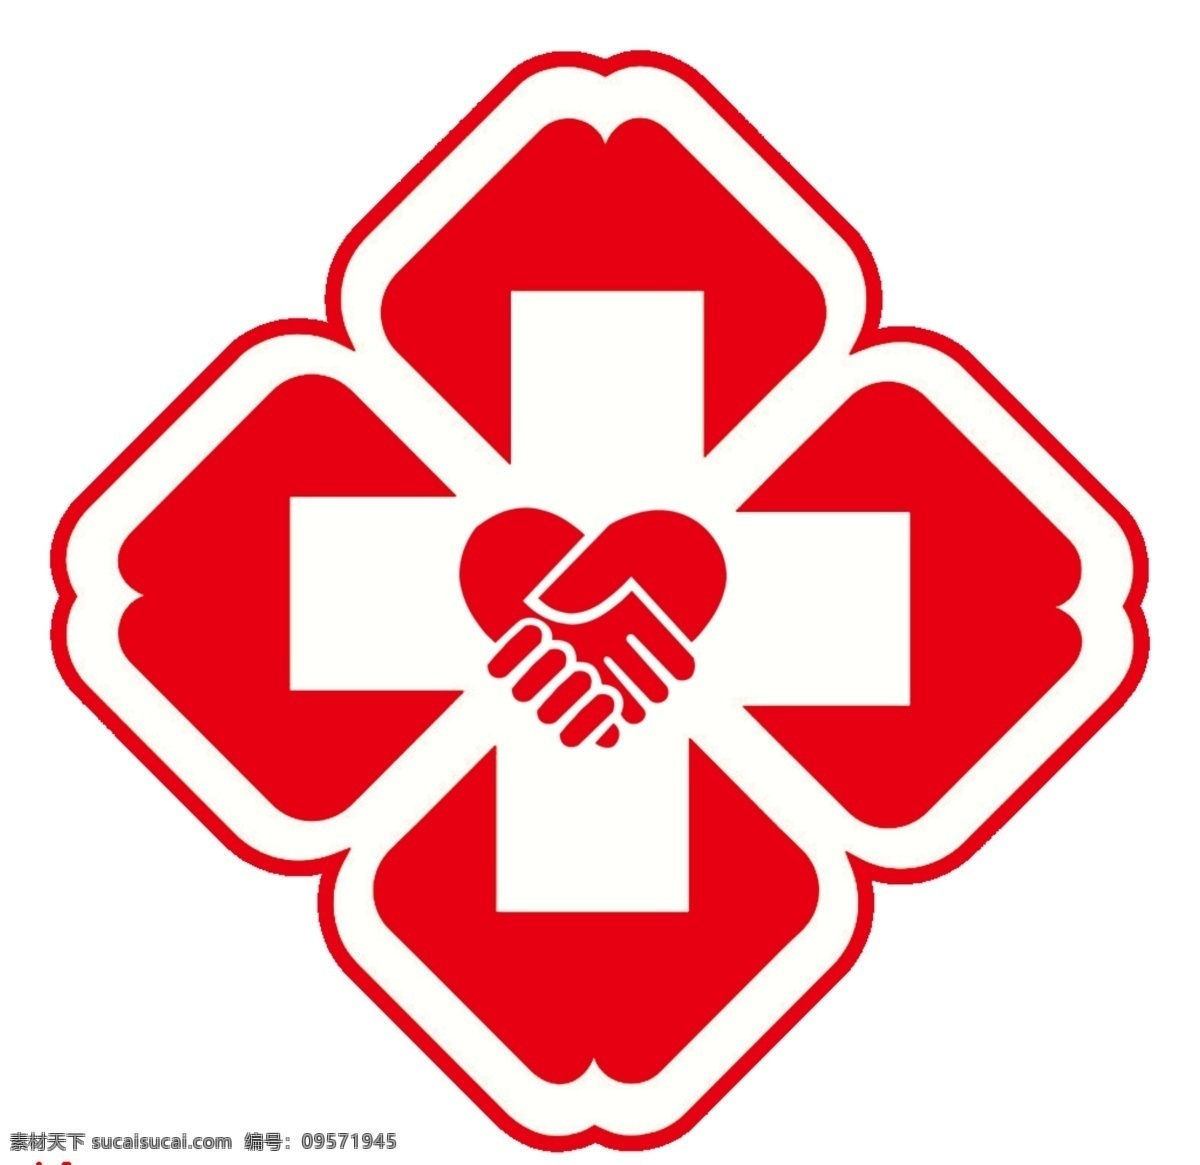 手足 医院 logo 手足医院 医院标志 红十字 医疗